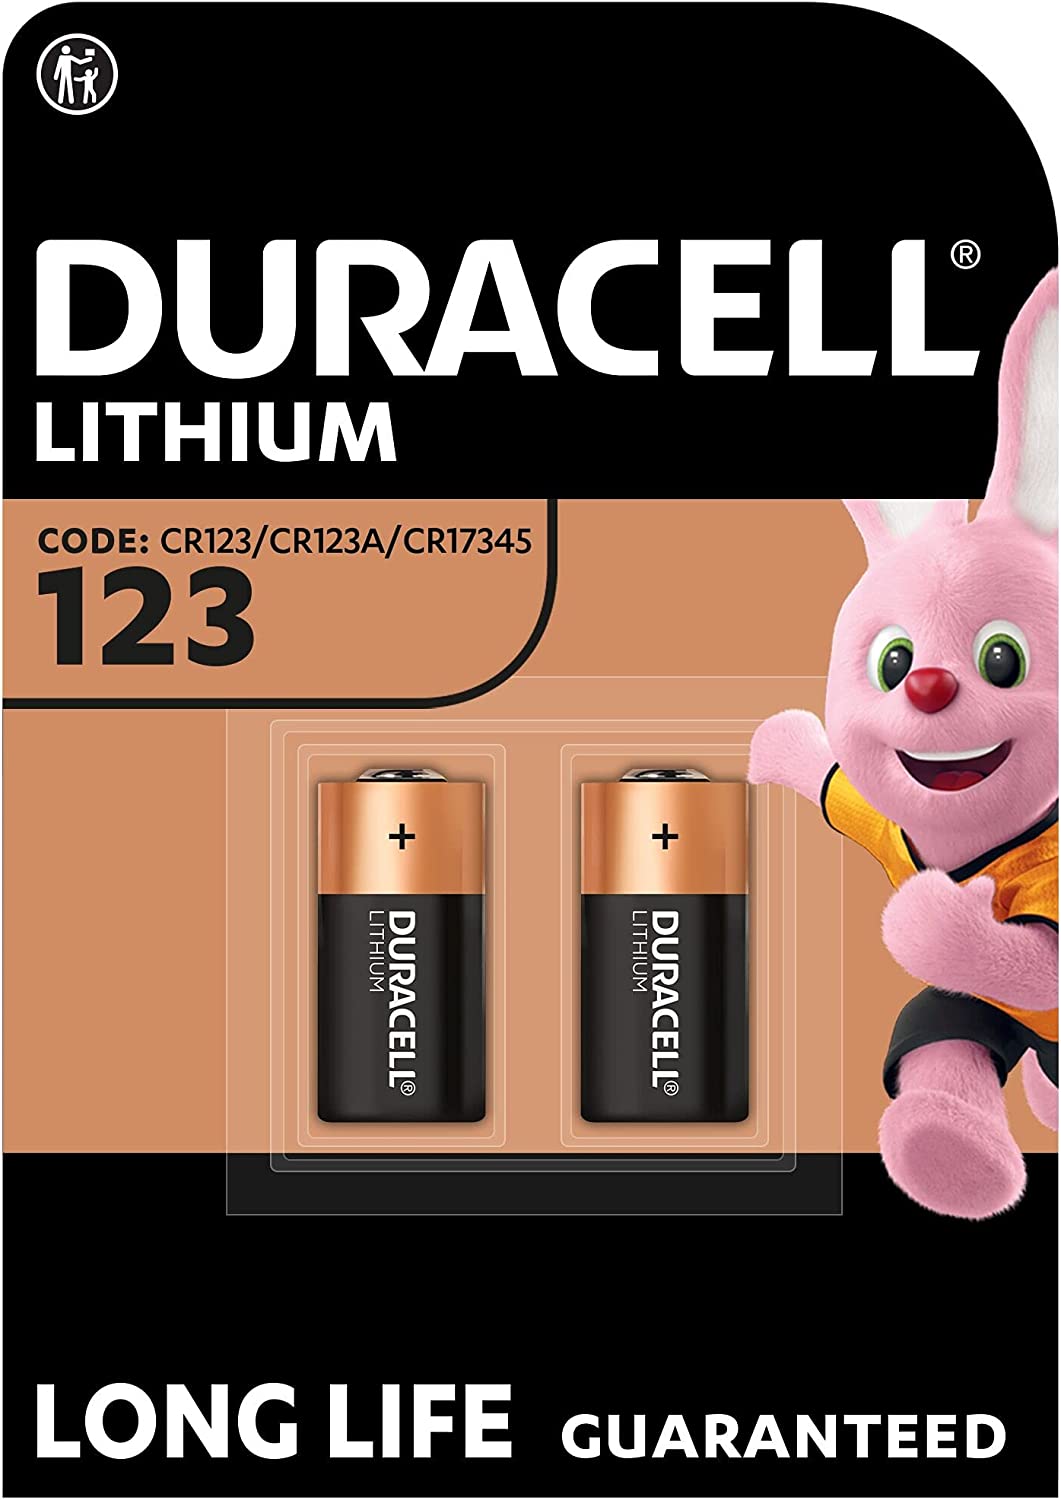 Duracell High Power 123, 3V Lithium Batterie, CR123 CR123A CR17345, 2er-Pack